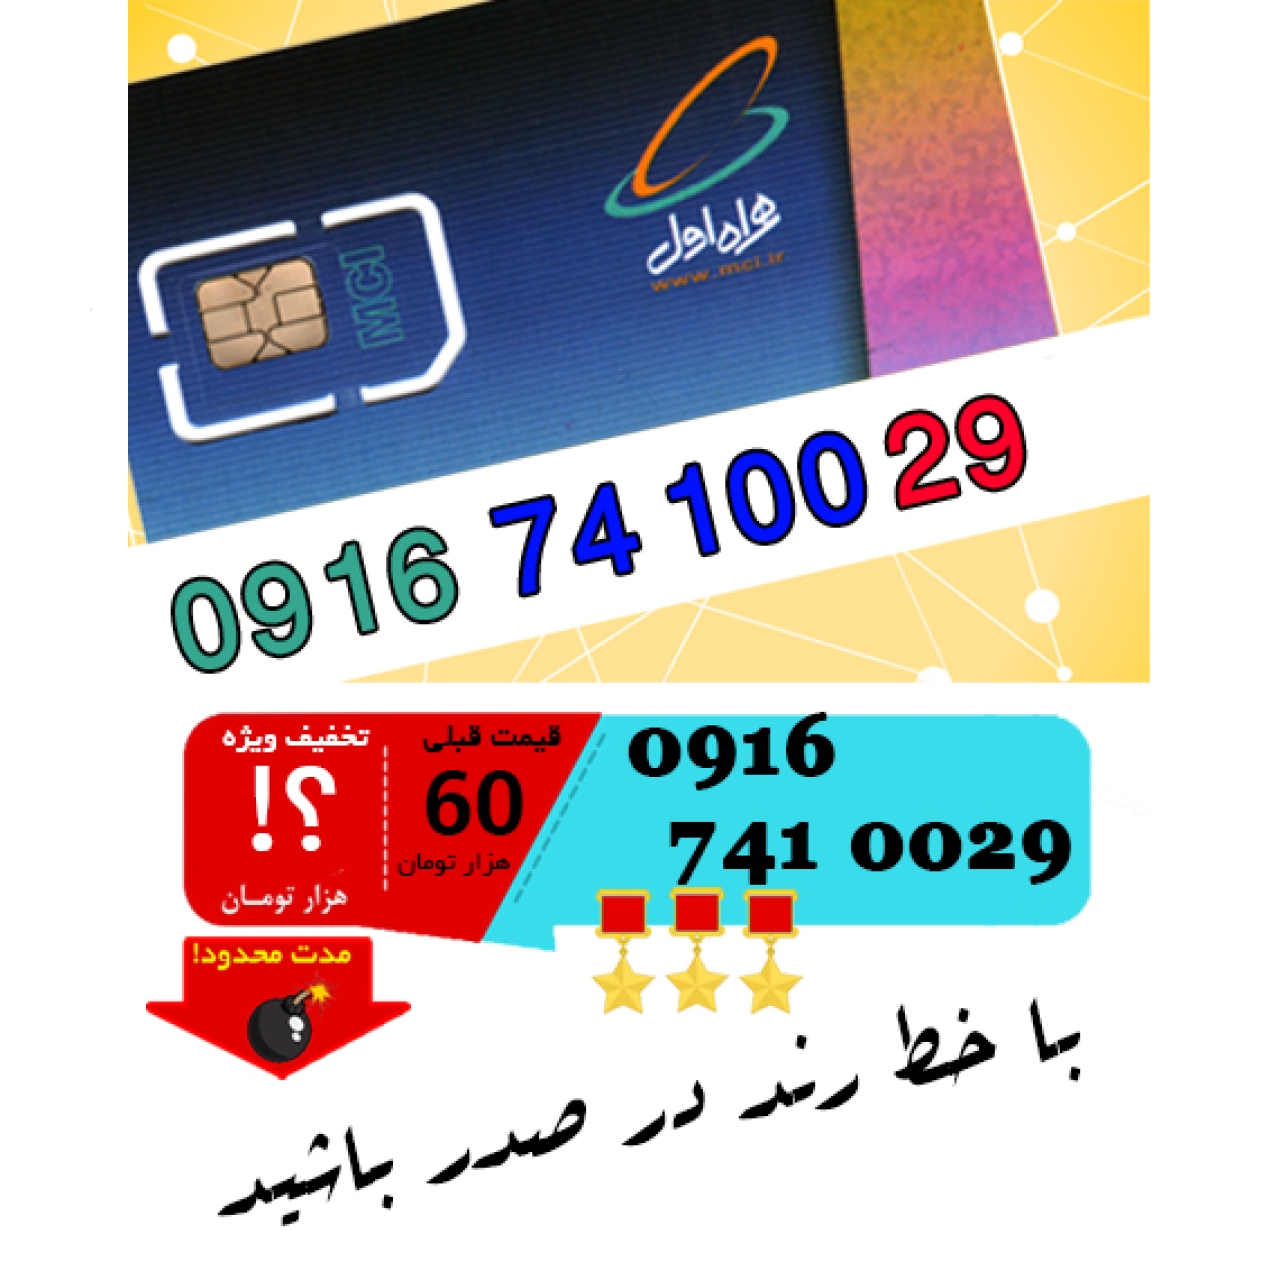 سیم کارت اعتباری رند همراه اول 09167410029